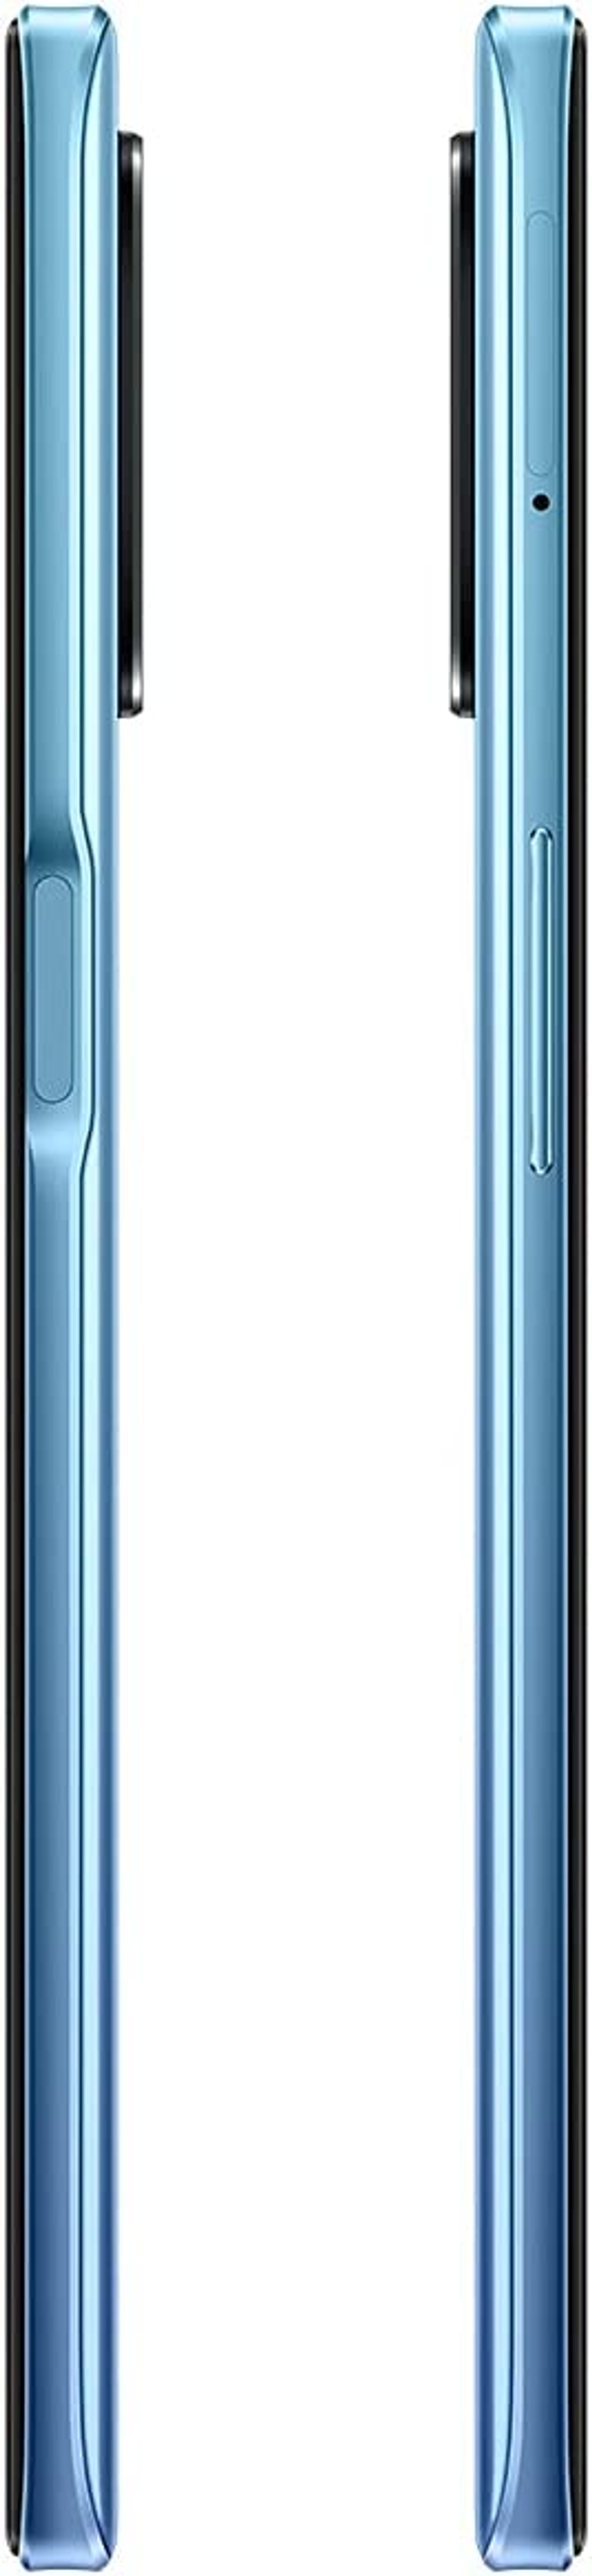 REALME 8 5G 64 Blau Dual SIM GB